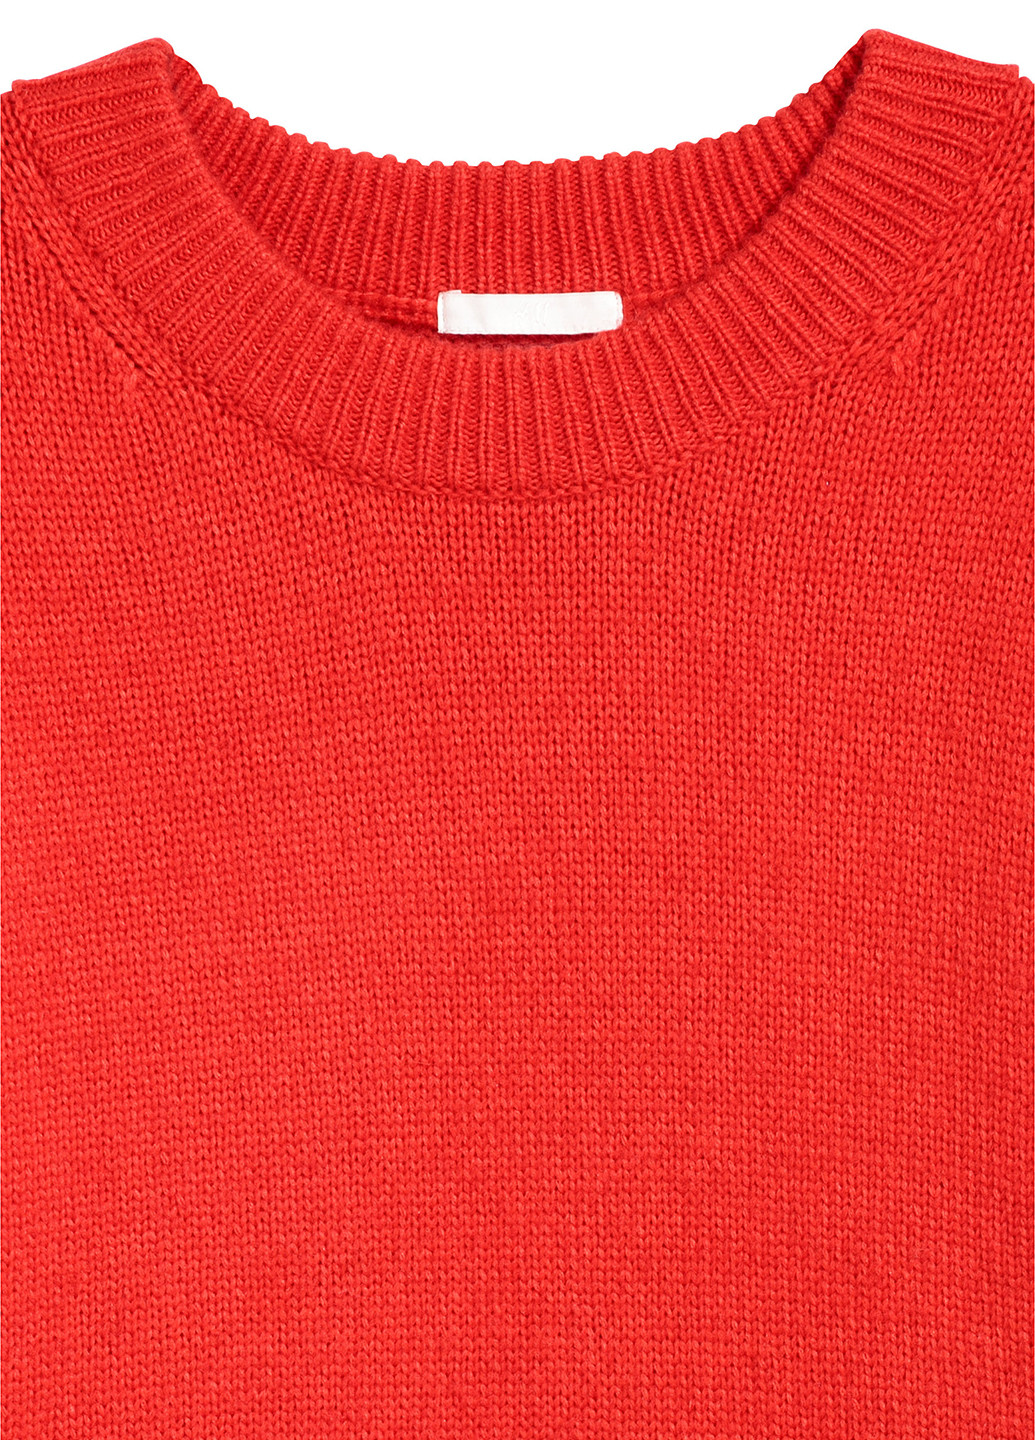 Красный демисезонный джемпер джемпер H&M